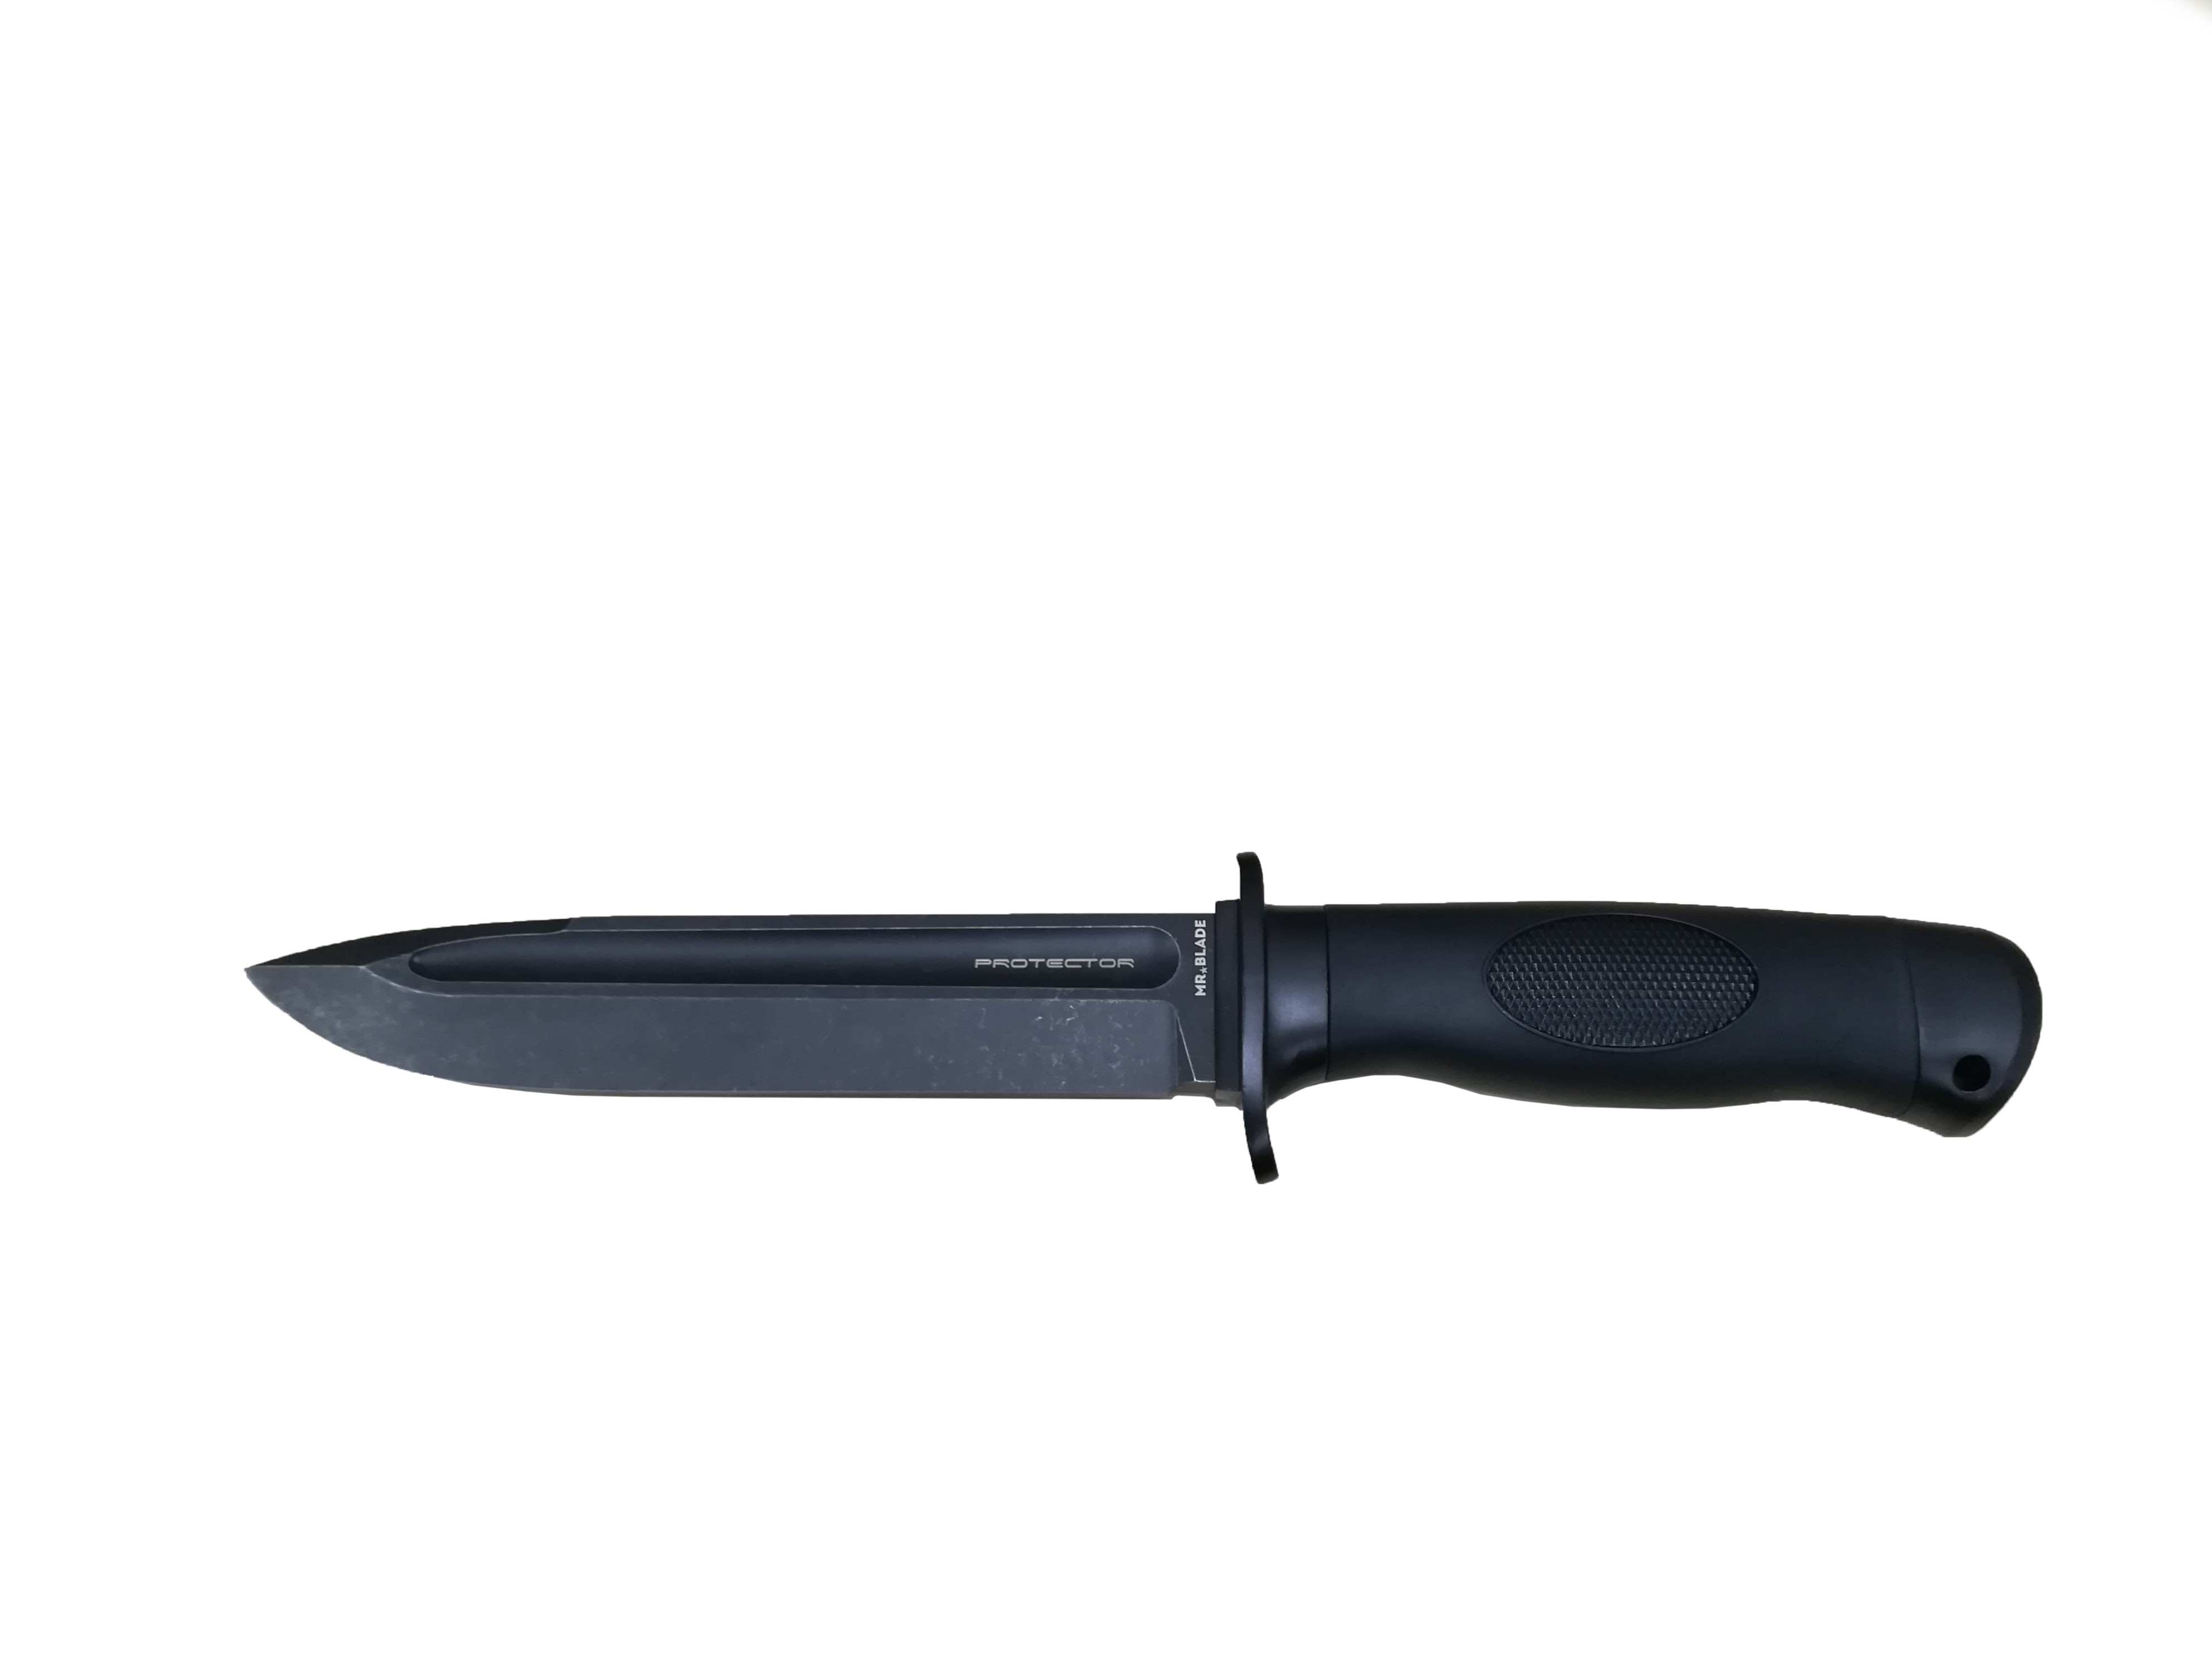 Нож Северная корона Protector черный - фото 1